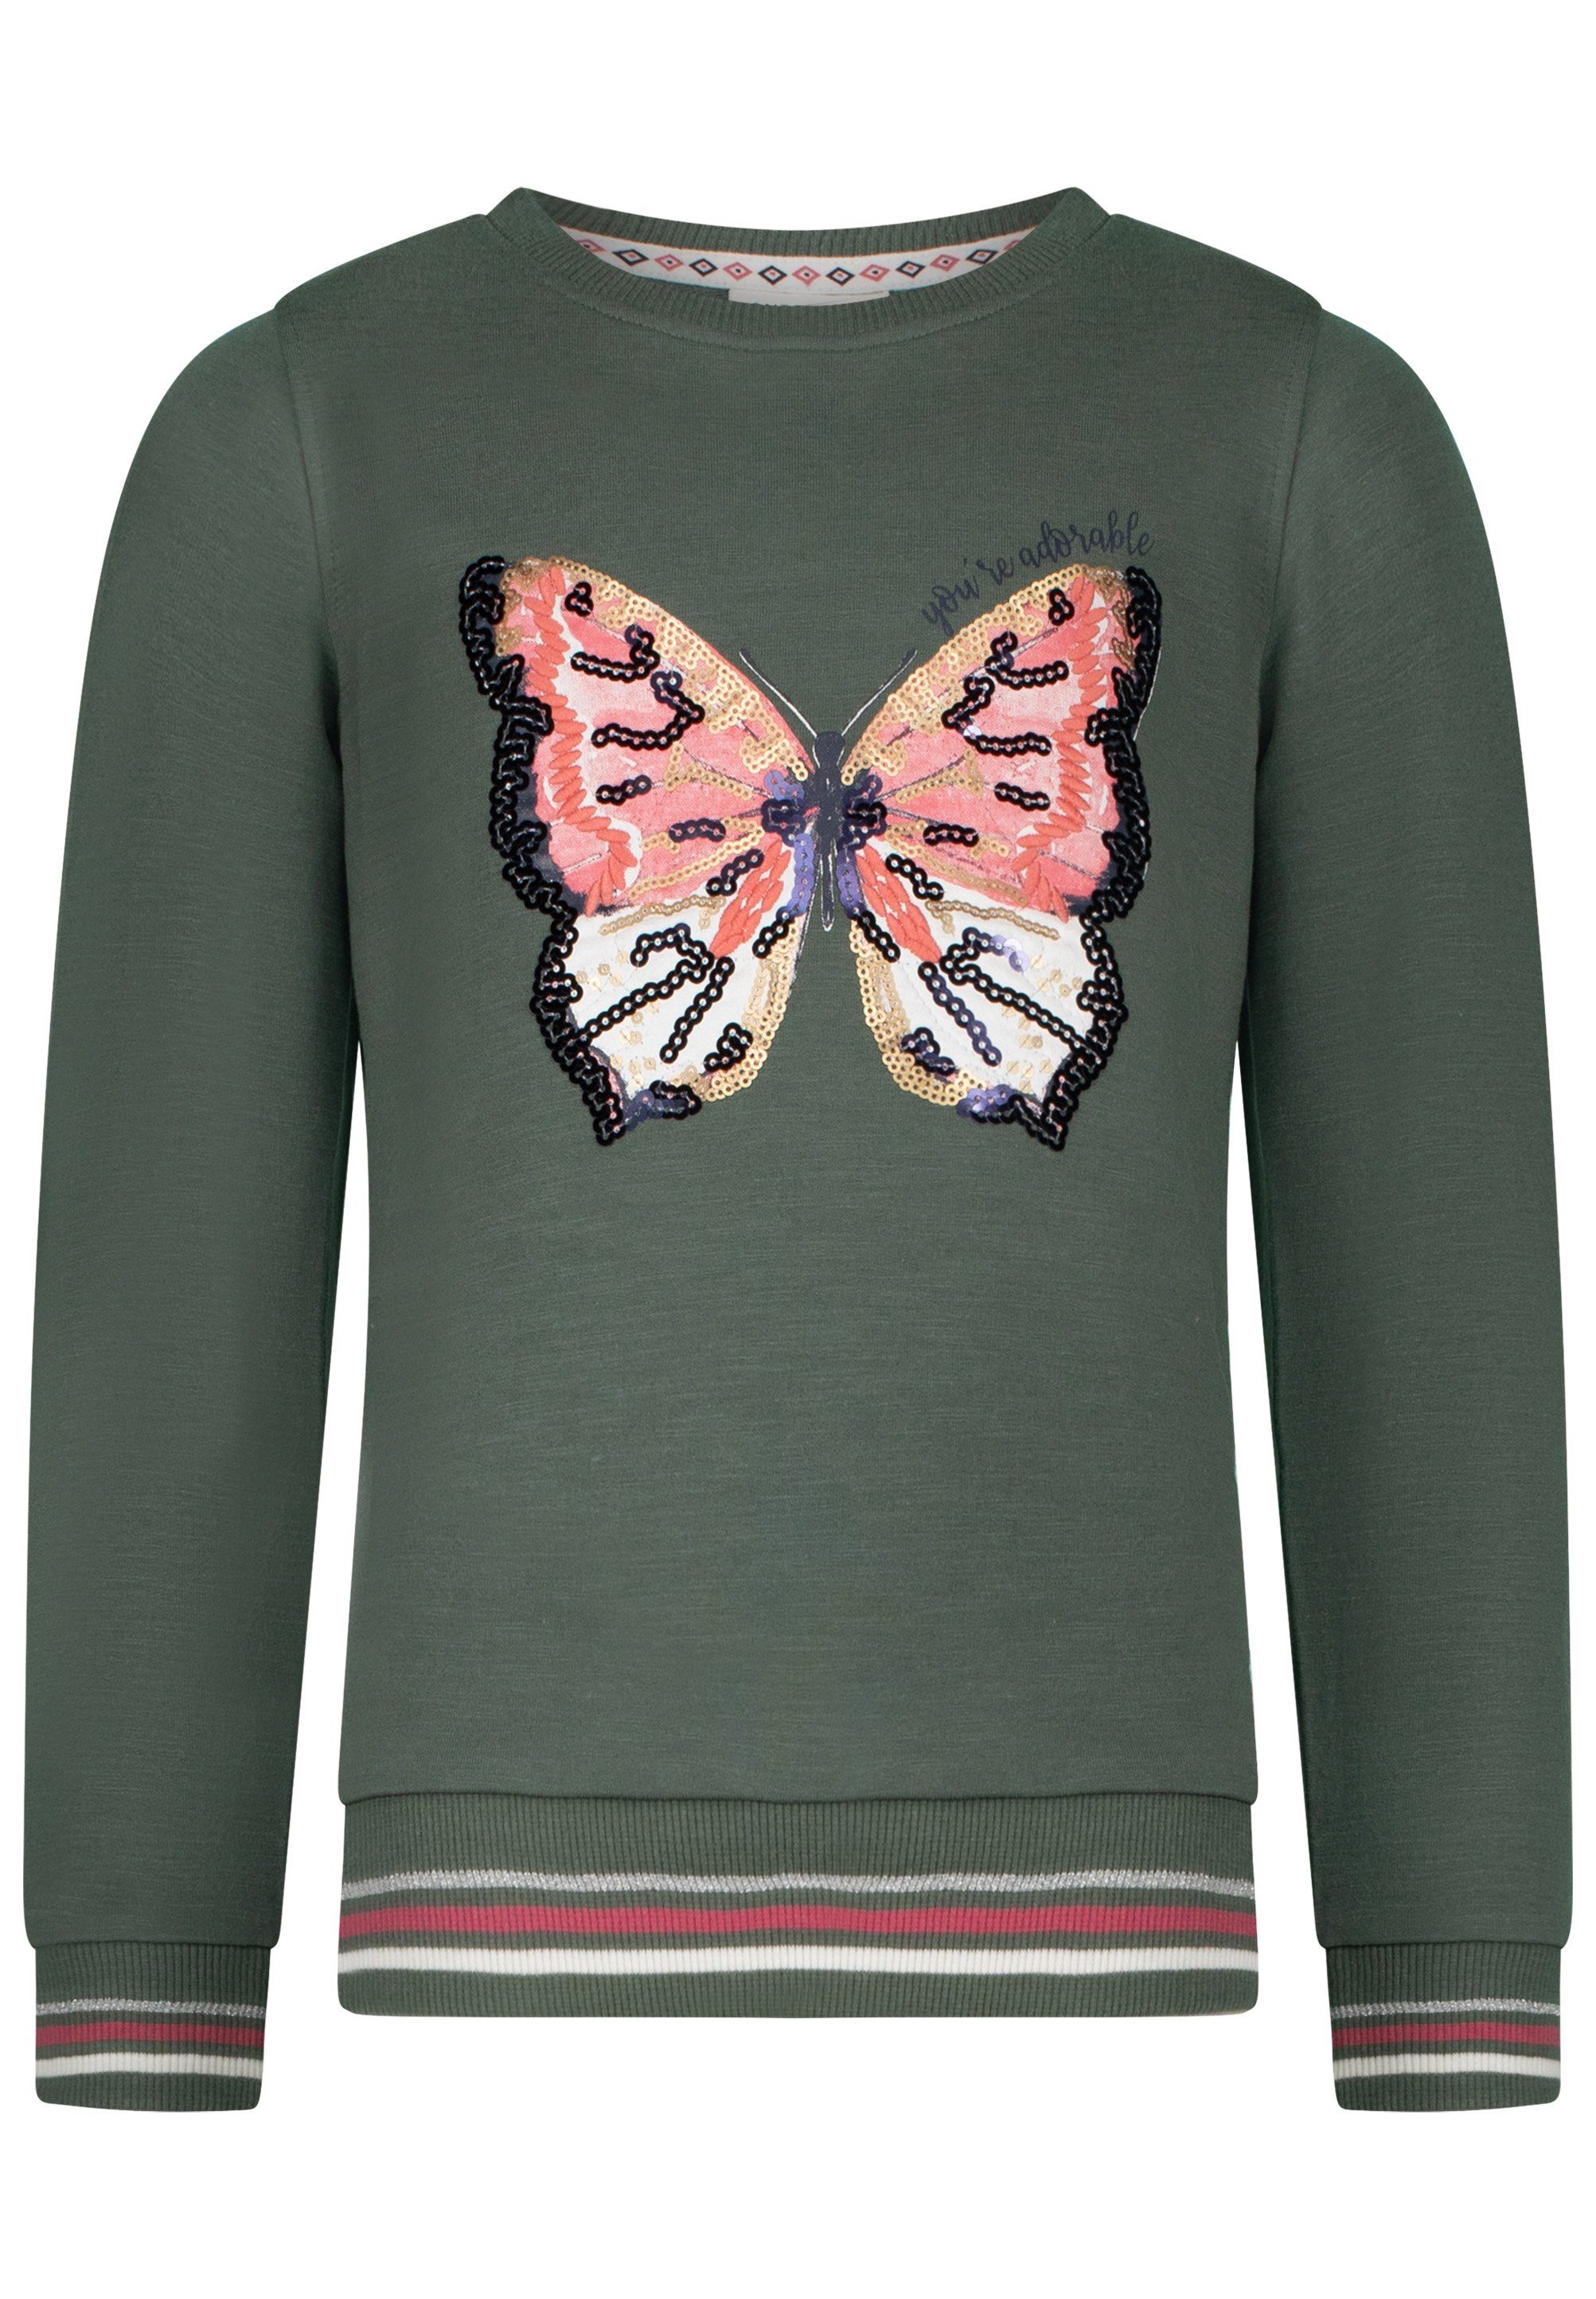 SALT AND PEPPER Sweatshirt verziert Pailletten Amazing Detailreicher mit Paillettenschmetterling, mit großem Schmetterlingsdruck